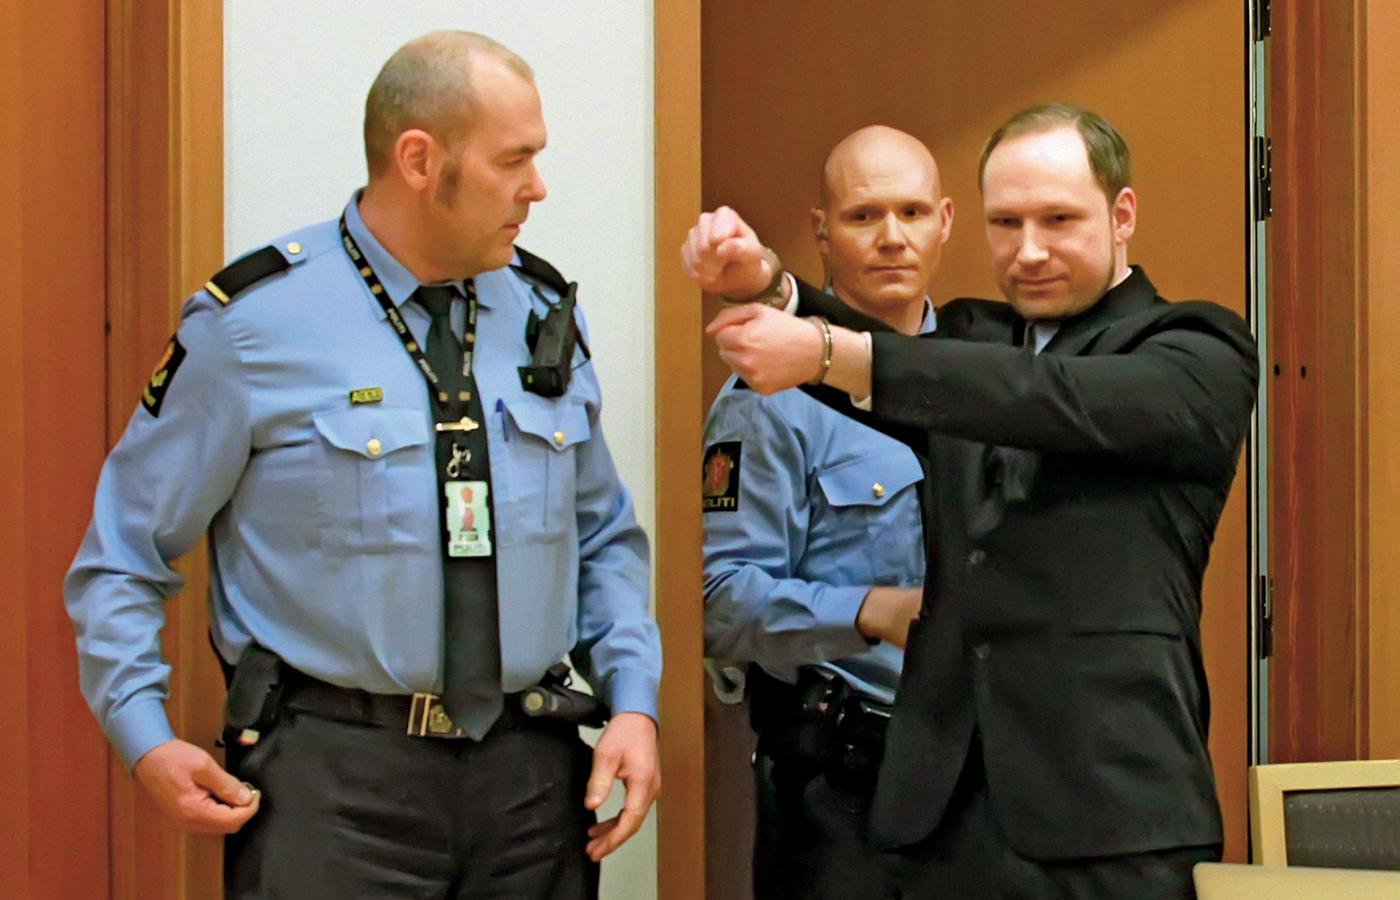 Po długo oczekiwanym procesie A. Breivik został skazany na 21 lat więzienia z możliwością przedłużenia kary.